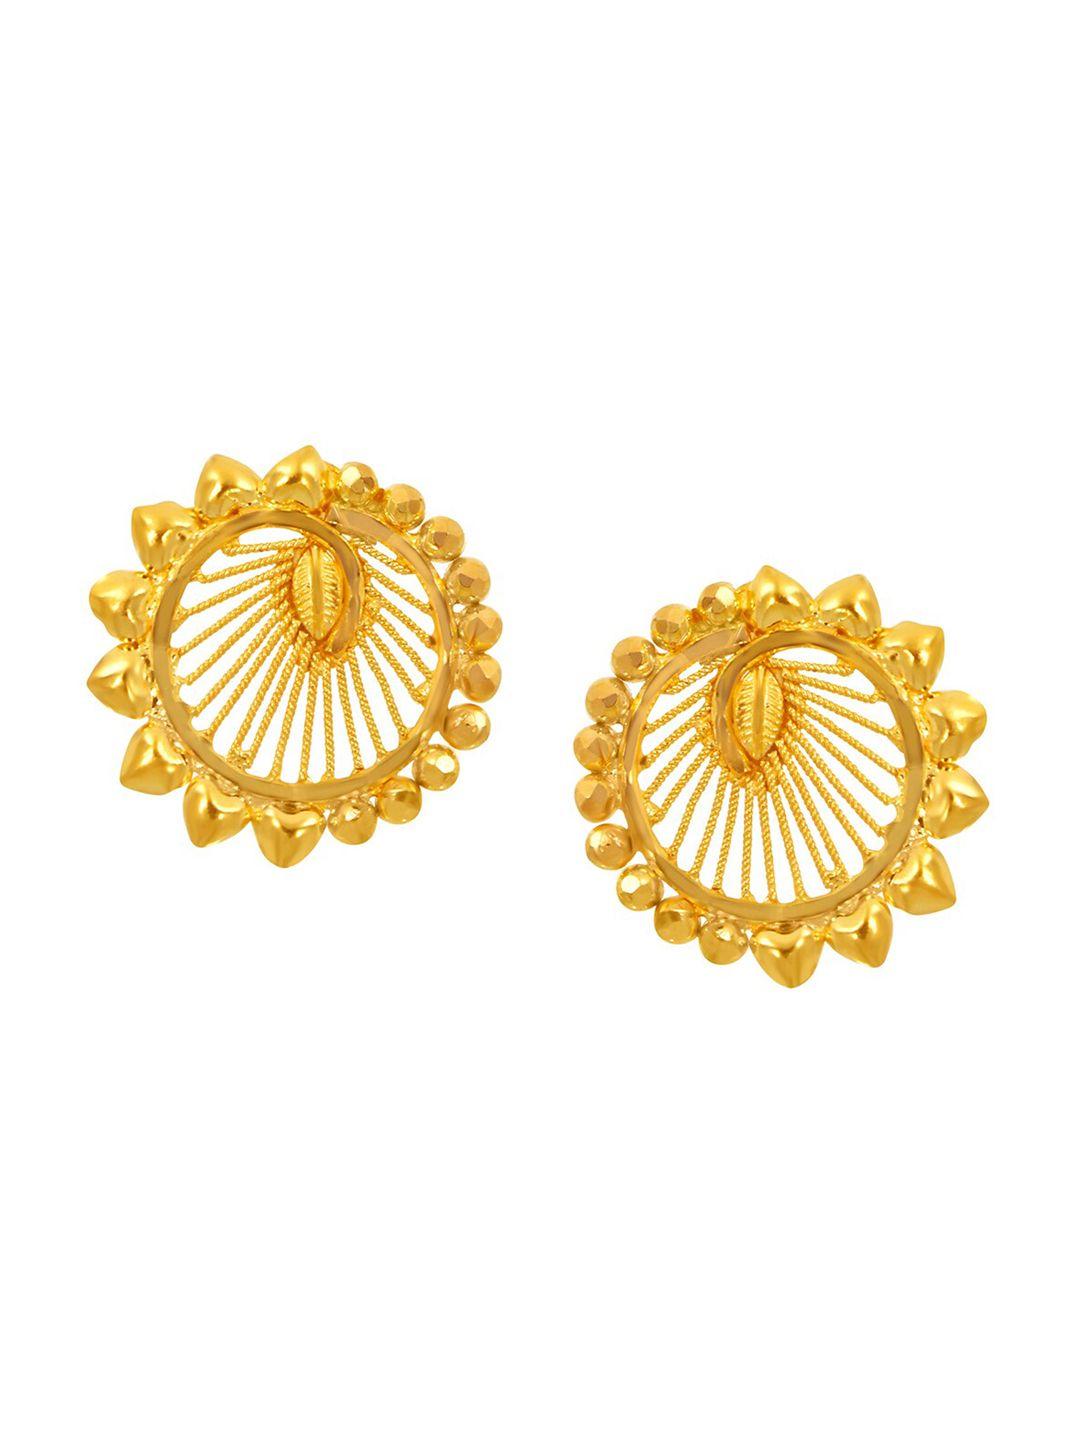 senco captivating 22kt gold stud earrings-2.0gm